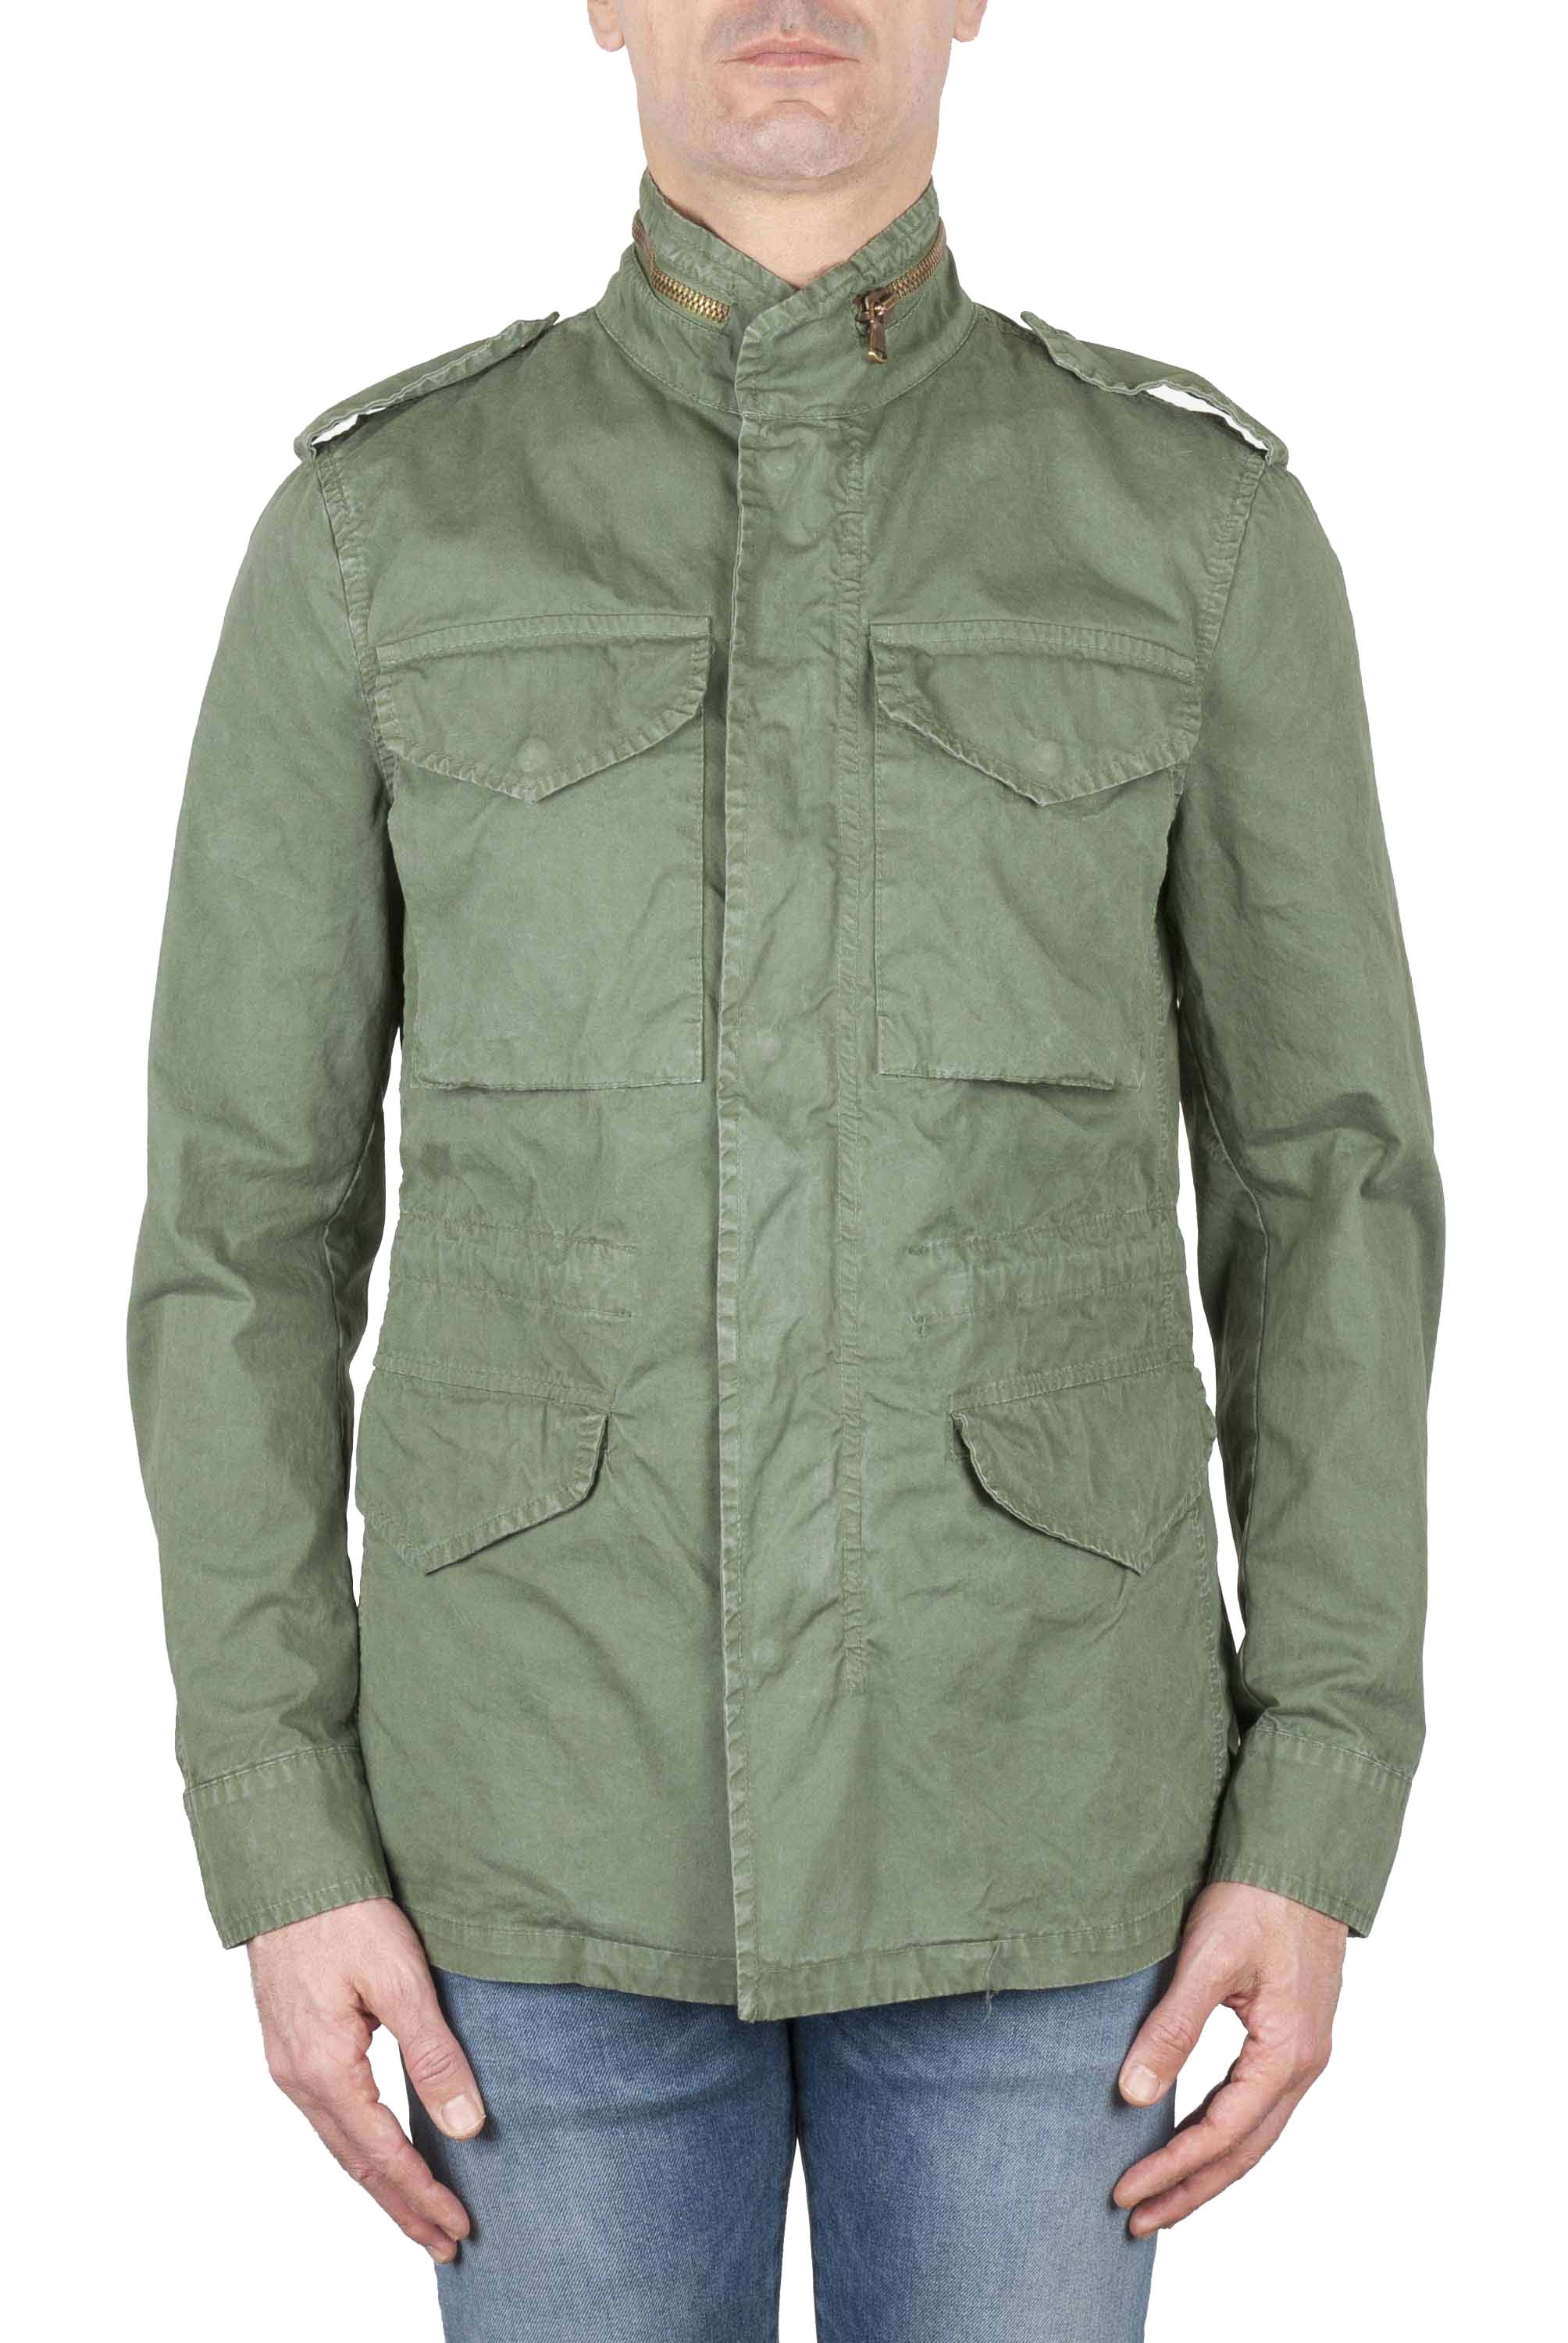 SBU 01105 Field jacket in cotone 01